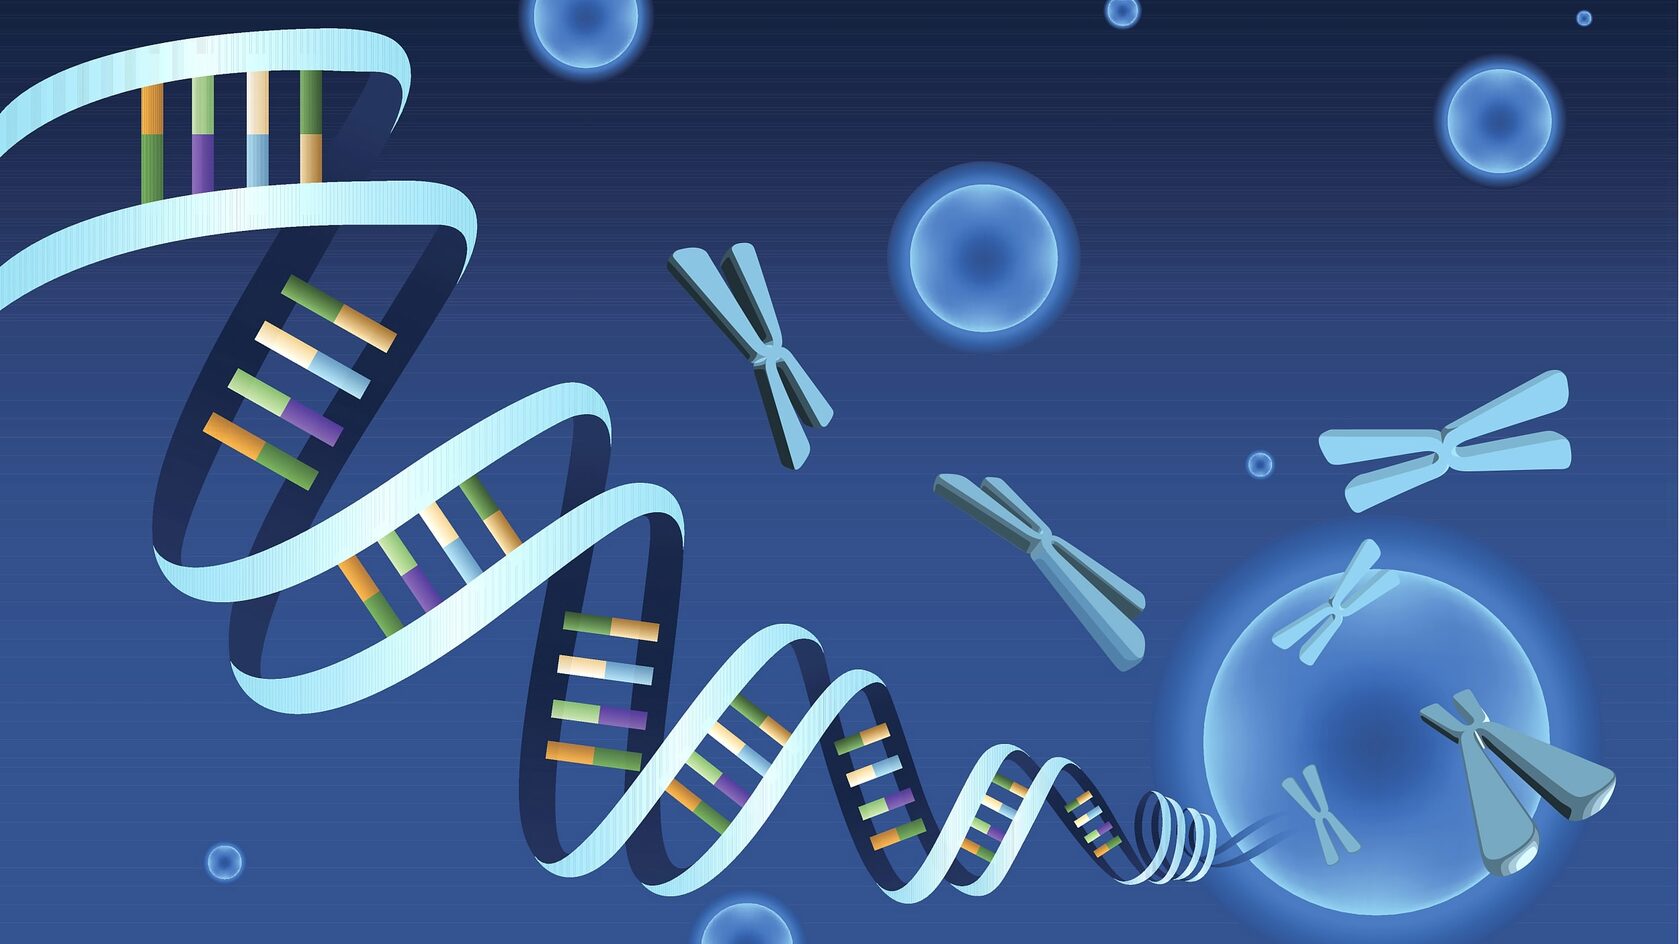 Электронный журнал «Наука и технологии» | Геном без белых пятен